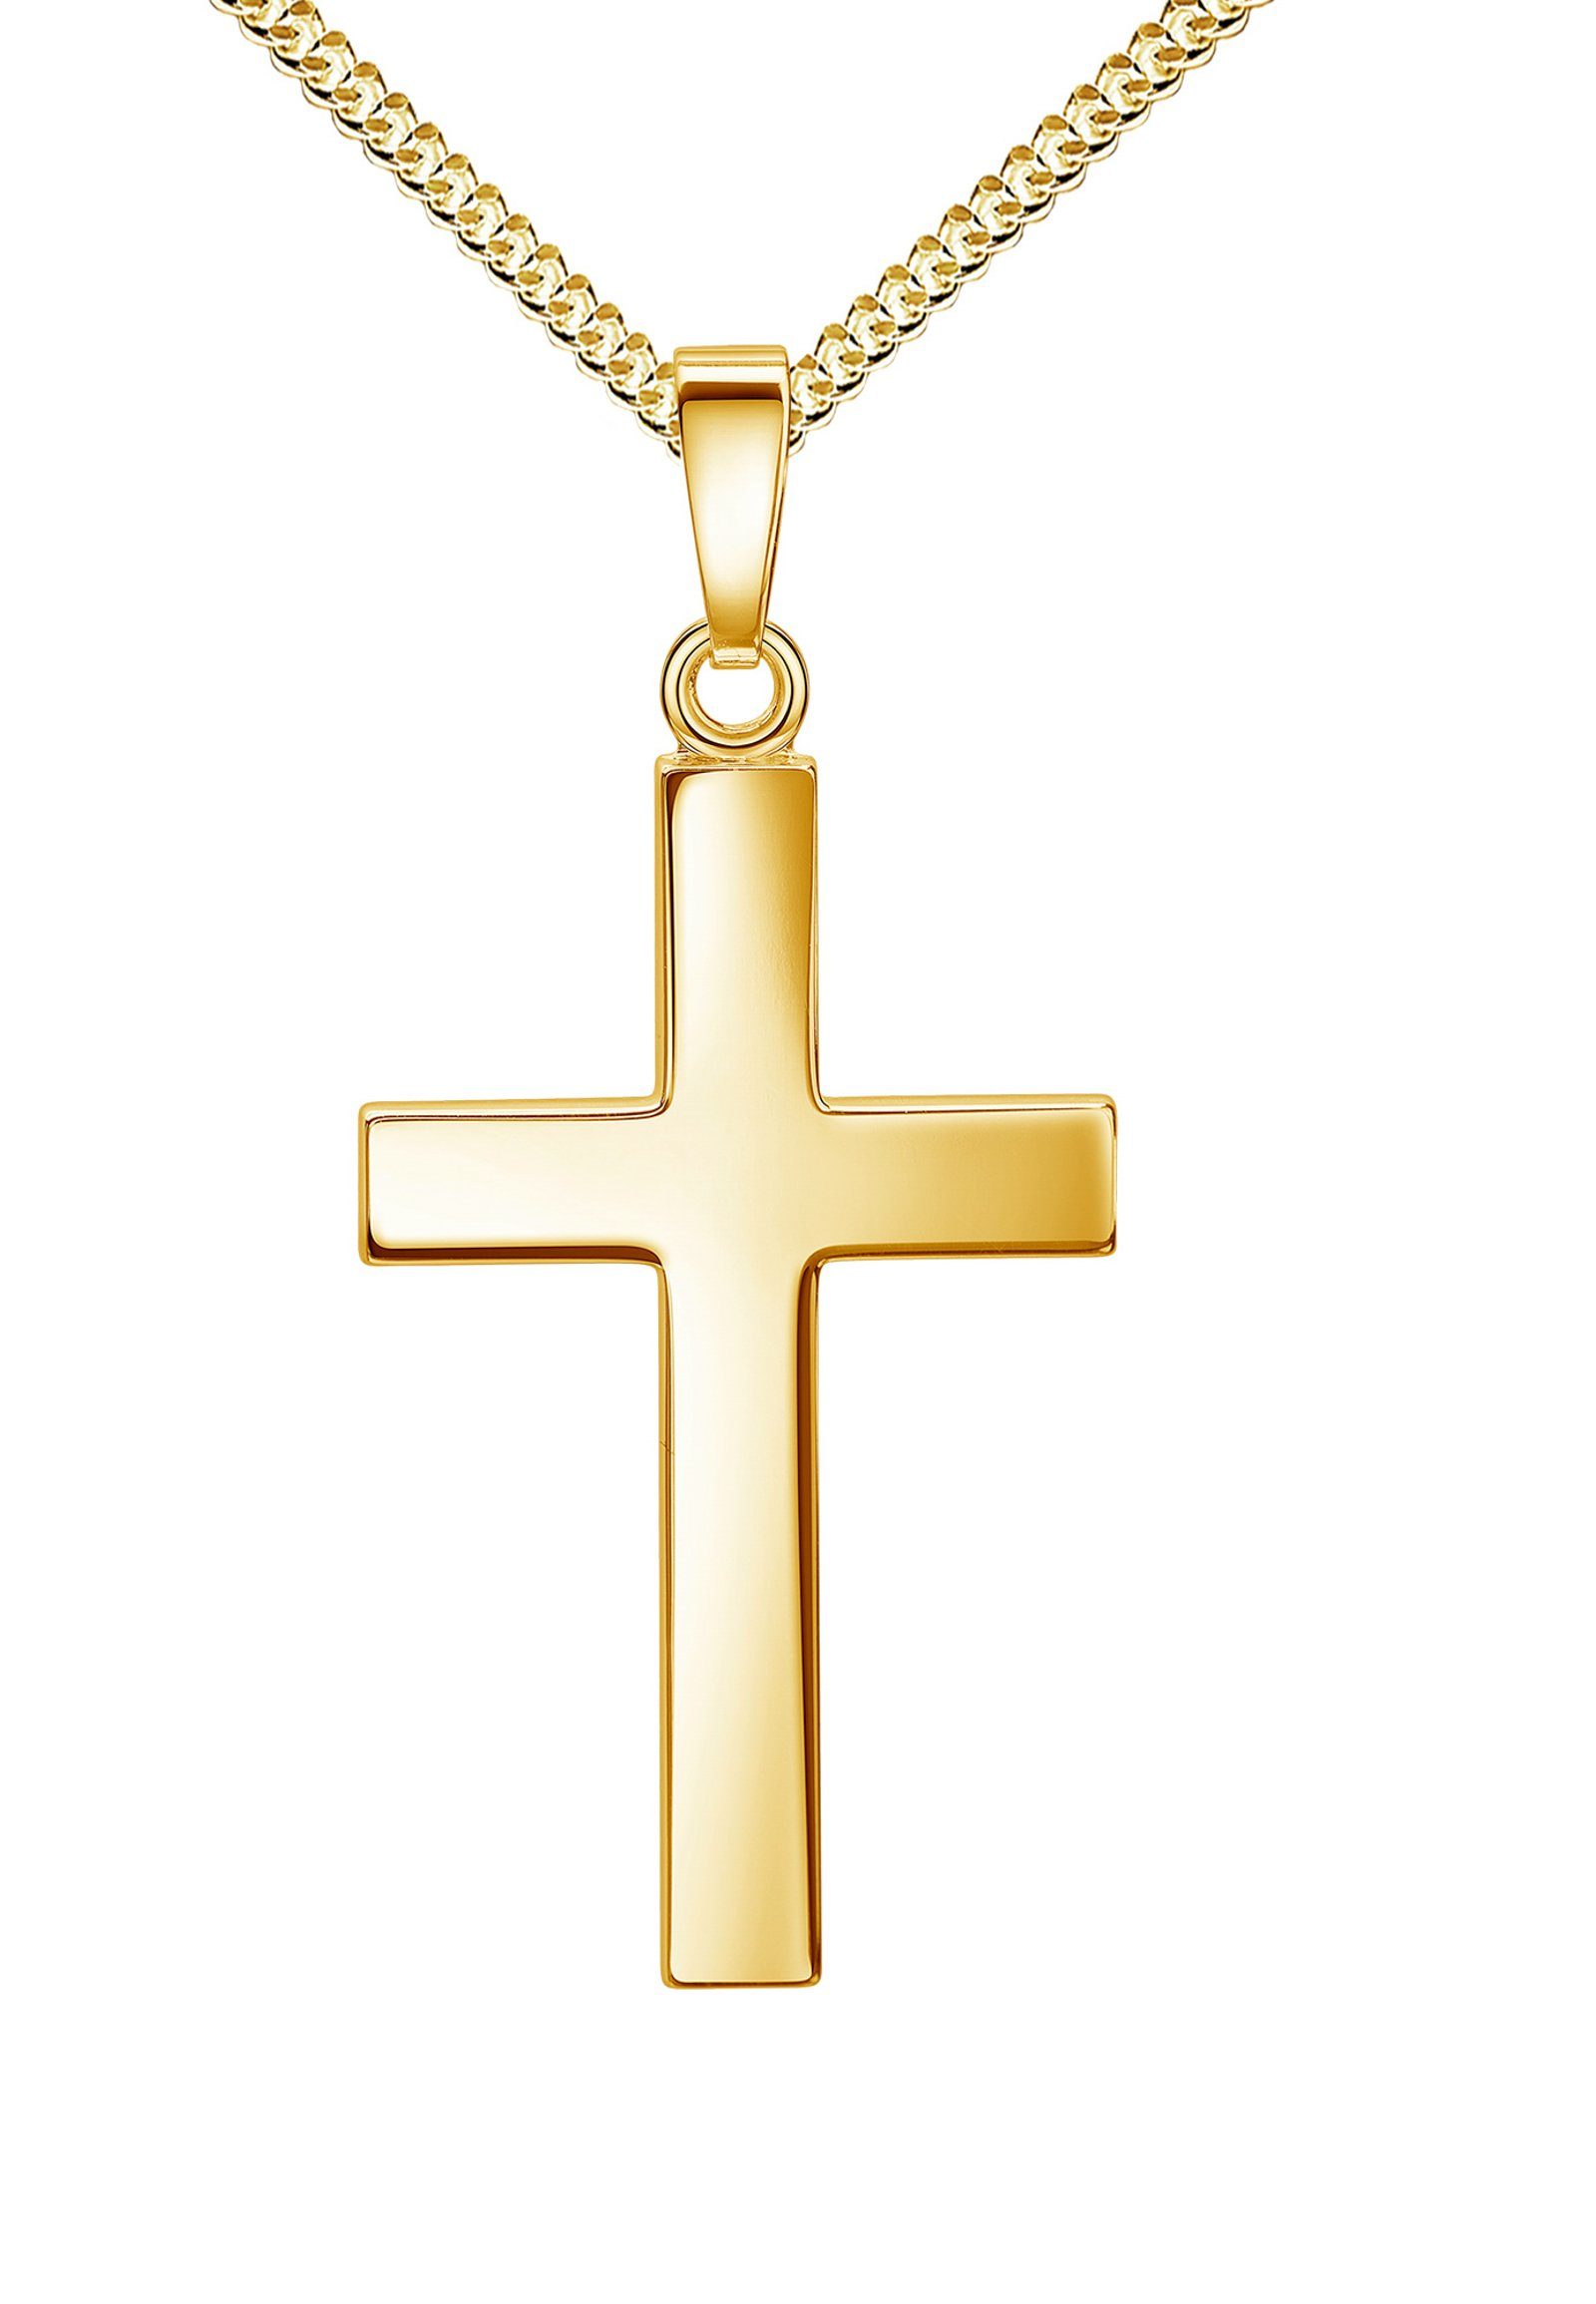 JEVELION Kette mit Anhänger Kreuzkette aus 333 Gelbgold (Goldkreuz, für  Damen), Kreuzanhänger Mit Kette - Länge wählbar 36 - 70 cm. Made in Germany